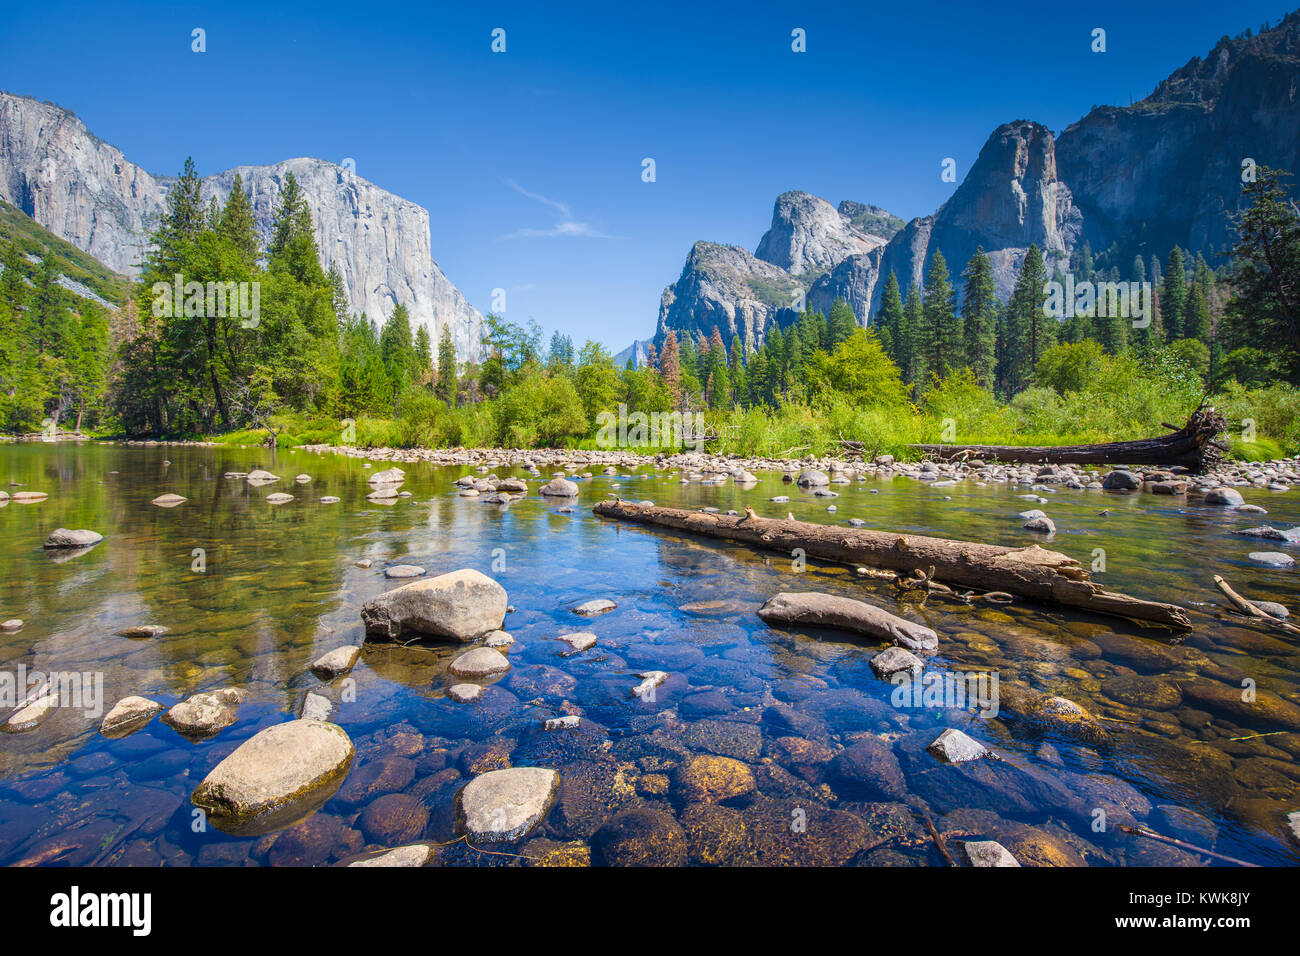 L'affichage classique de la vallée de Yosemite avec El Capitan célèbre sommet mondial de l'escalade et la rivière Merced idyllique sur une journée ensoleillée en été, California, USA Banque D'Images